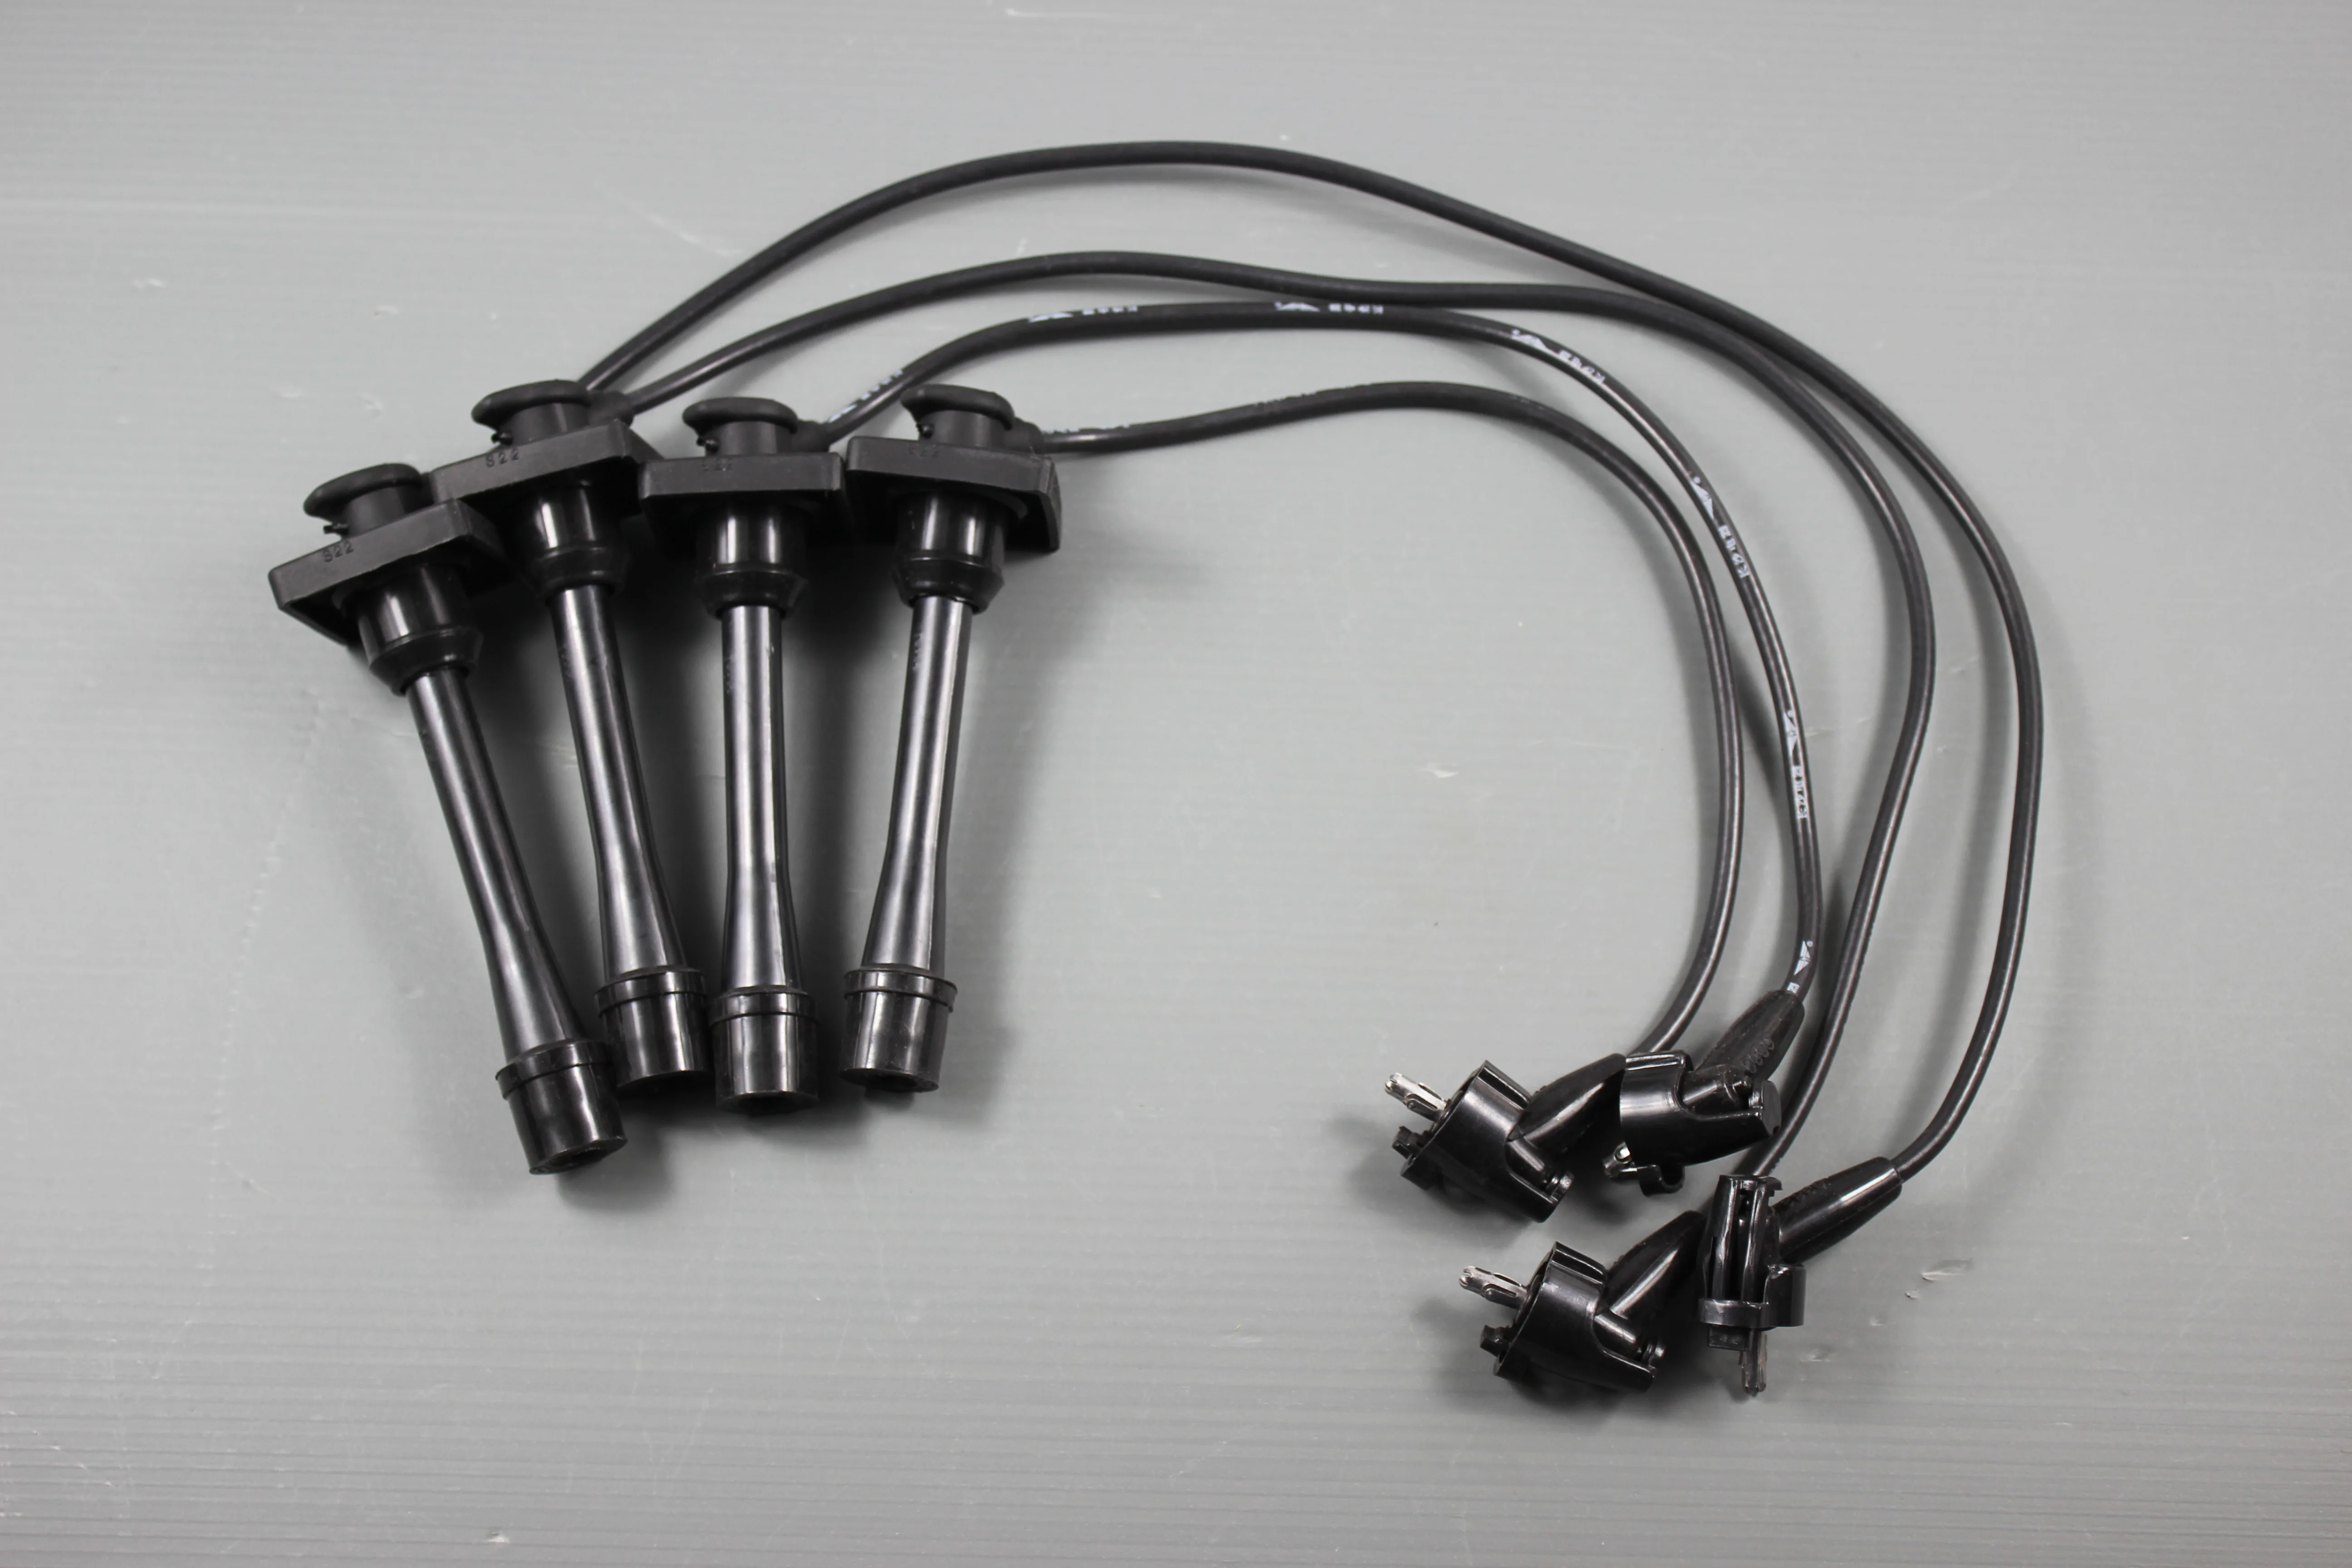 

Ignition coil cable for Toyota Corolla 1.4L (4E-FE), Toyota Corolla 1.6L (4A-FE) OE:90919-22373